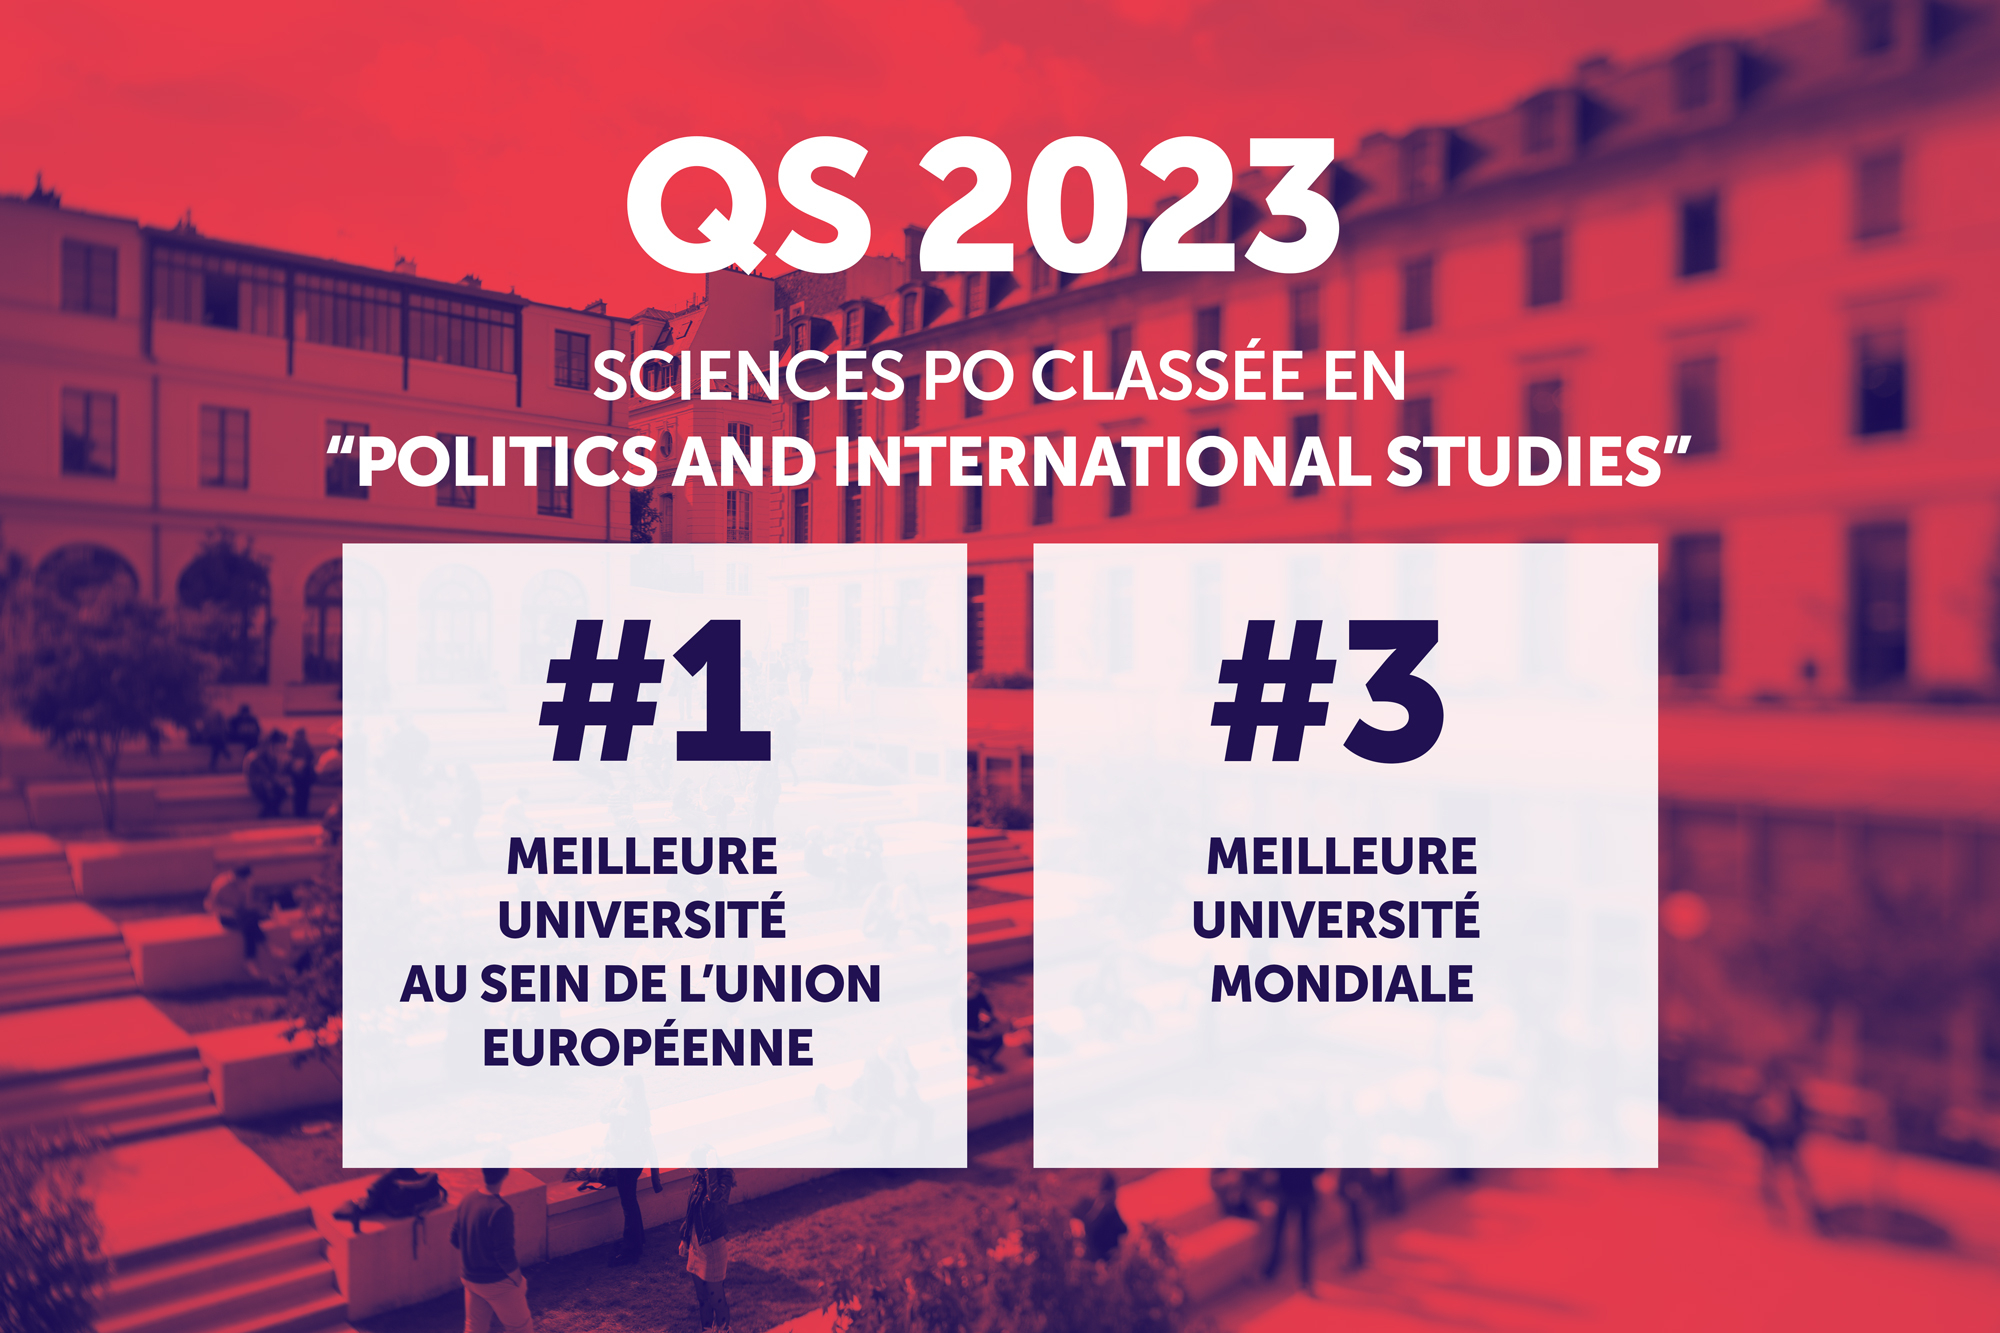 Sciences Po confirme son rang de 3e meilleure université mondiale en “Science politique et relations internationales” dans le classement QS...